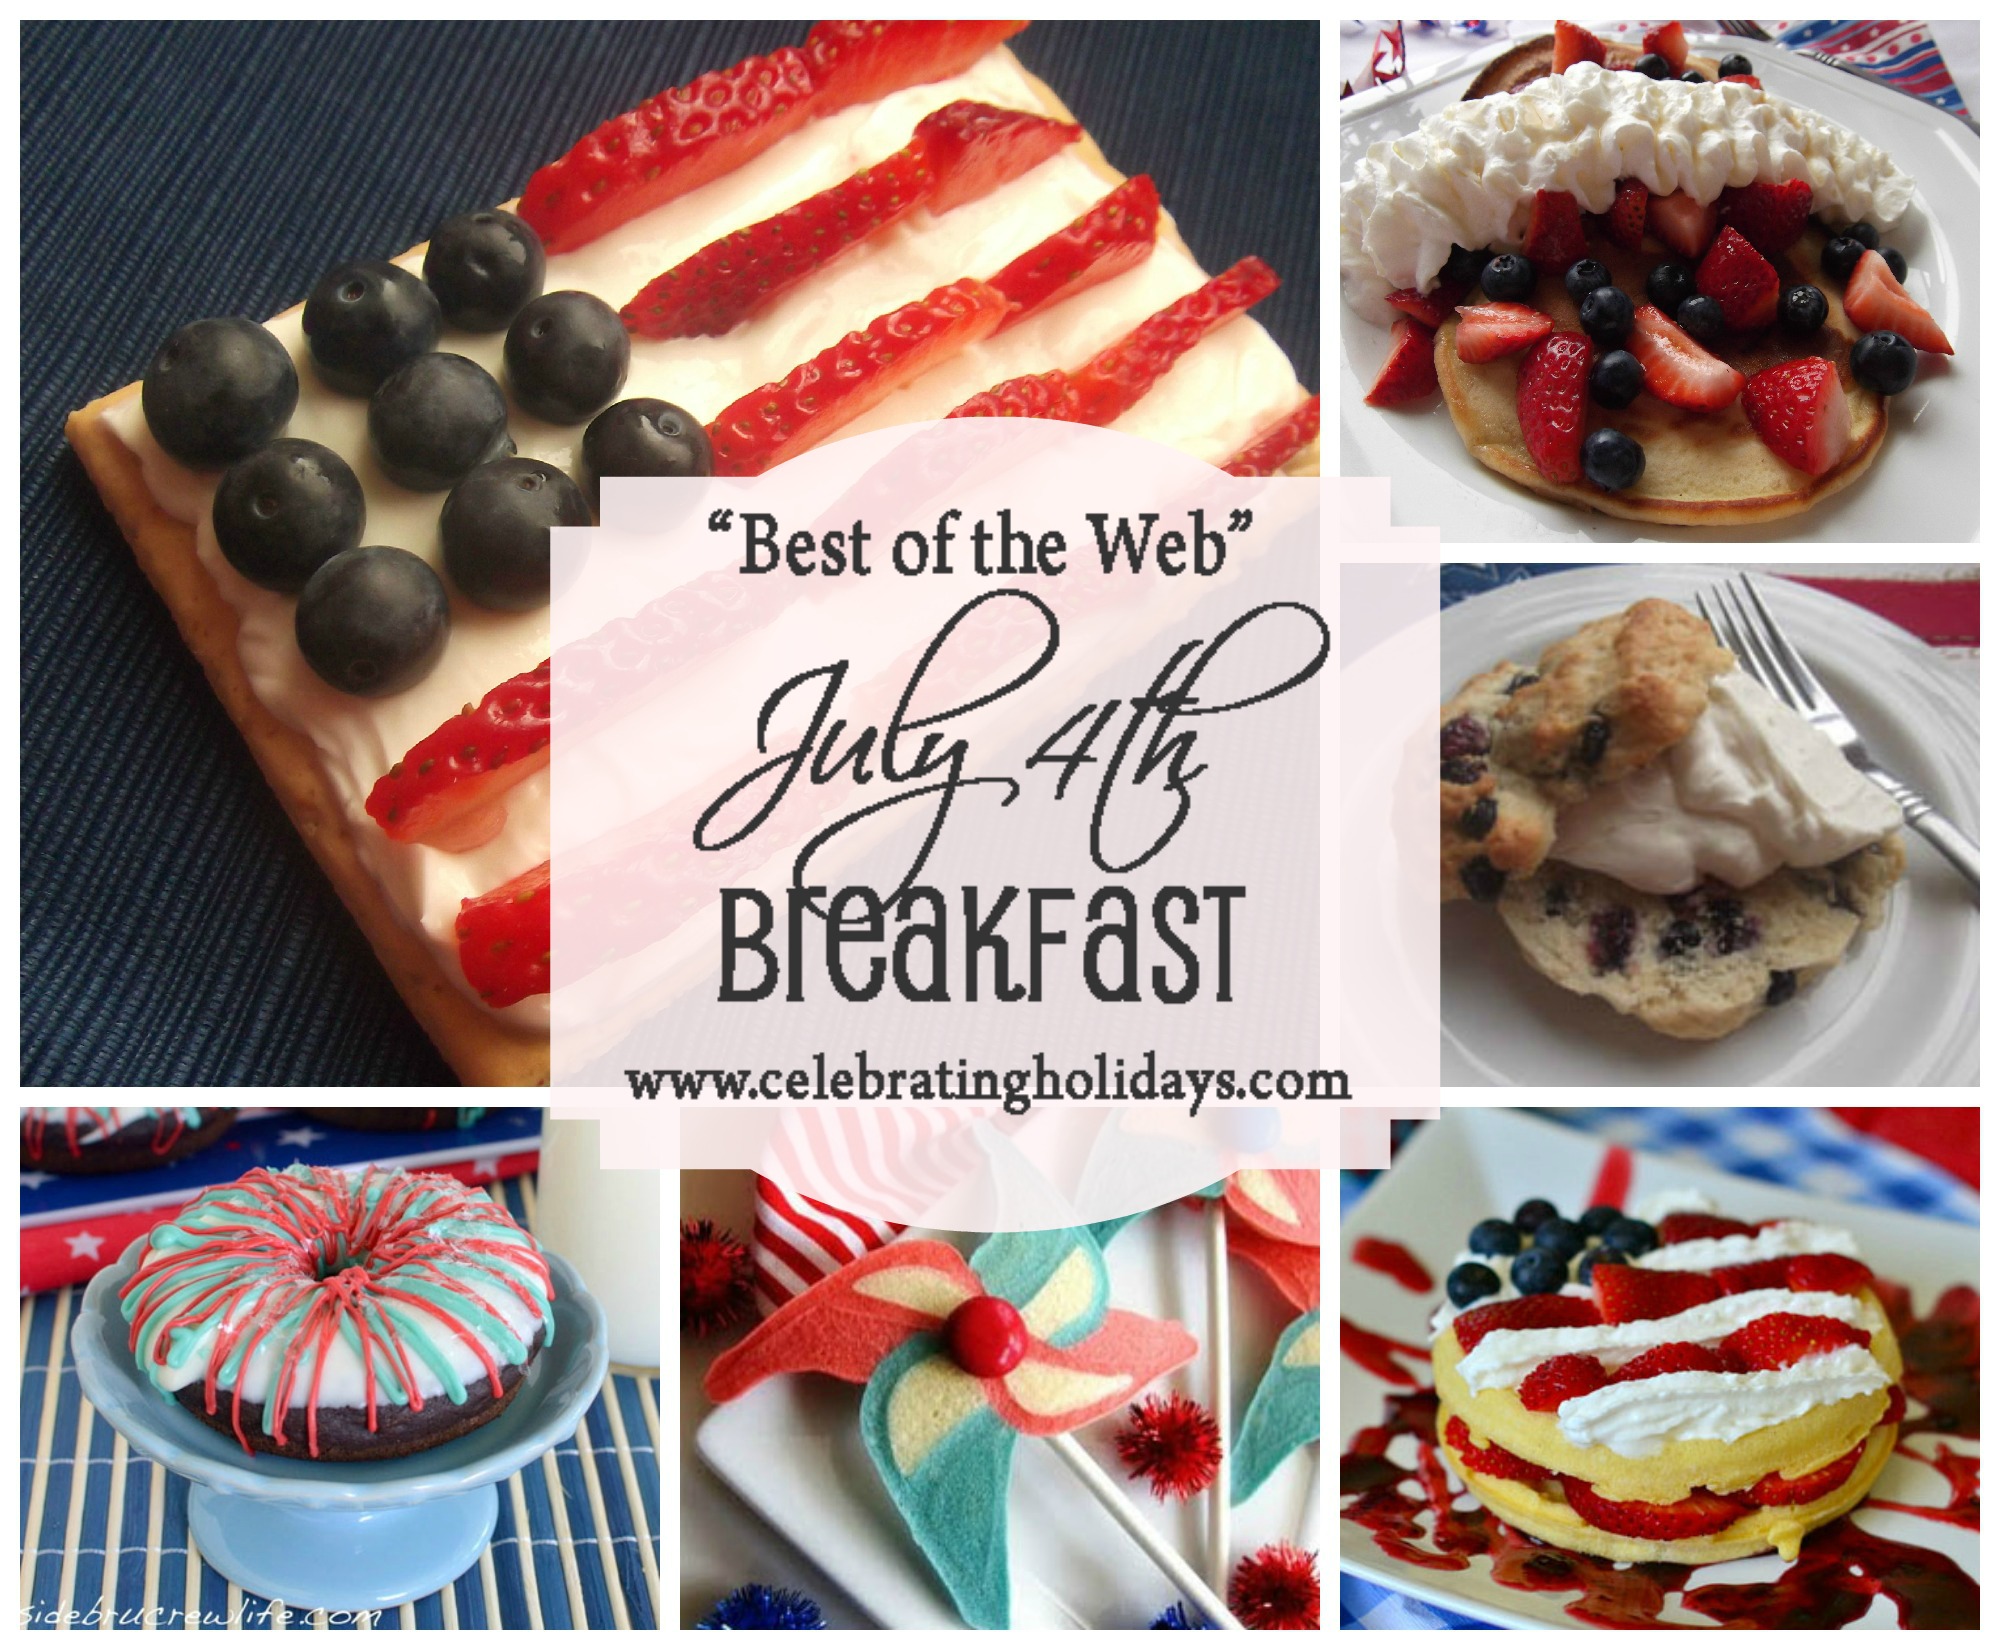 Best of the Web July 4th Breakfast Ideas